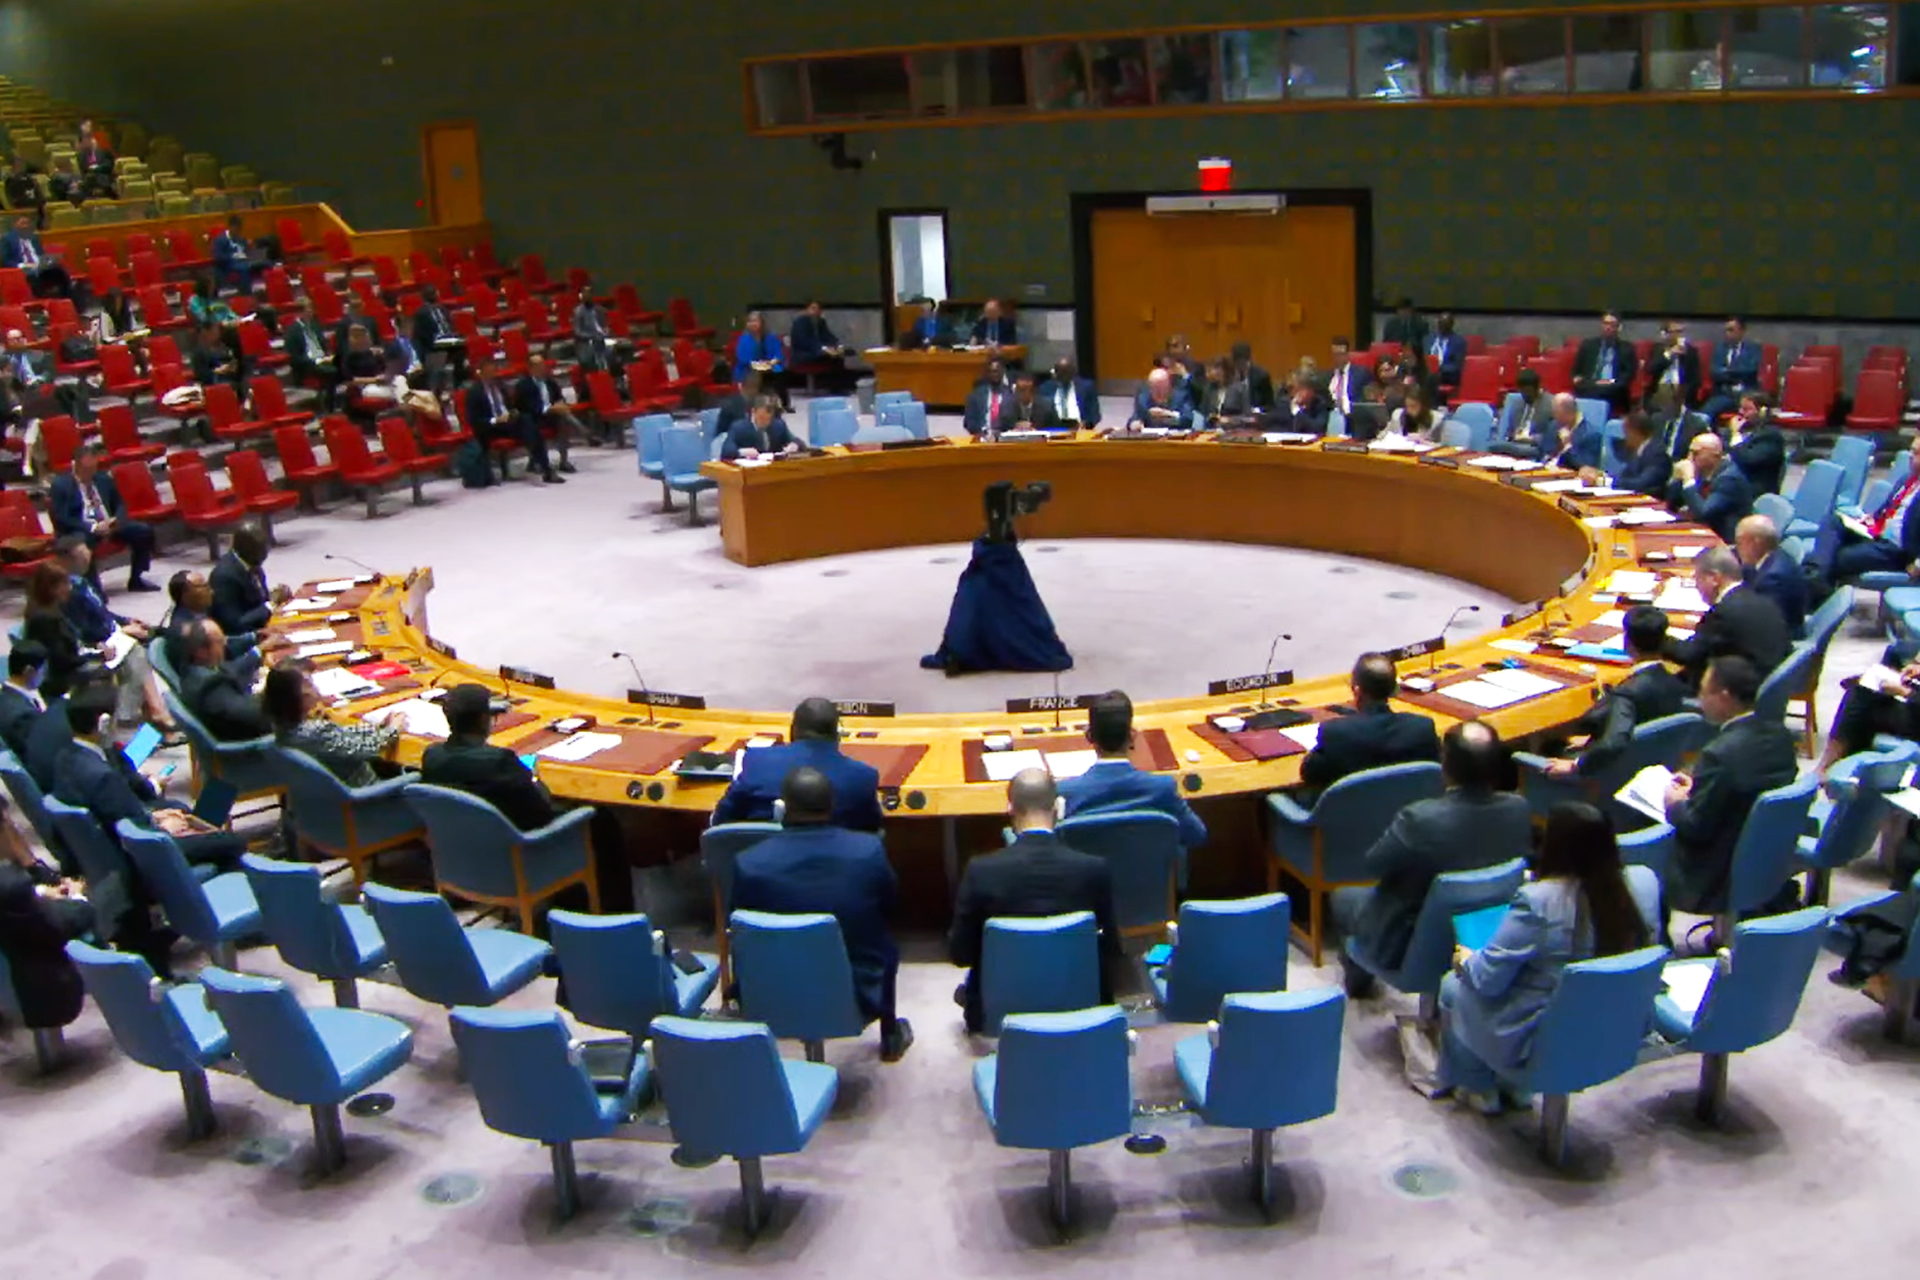 مجلس الأمن يبحث الأوضاع في غزة وغوتيريش يتحدث عن “كارثة هائلة” | أخبار – البوكس نيوز